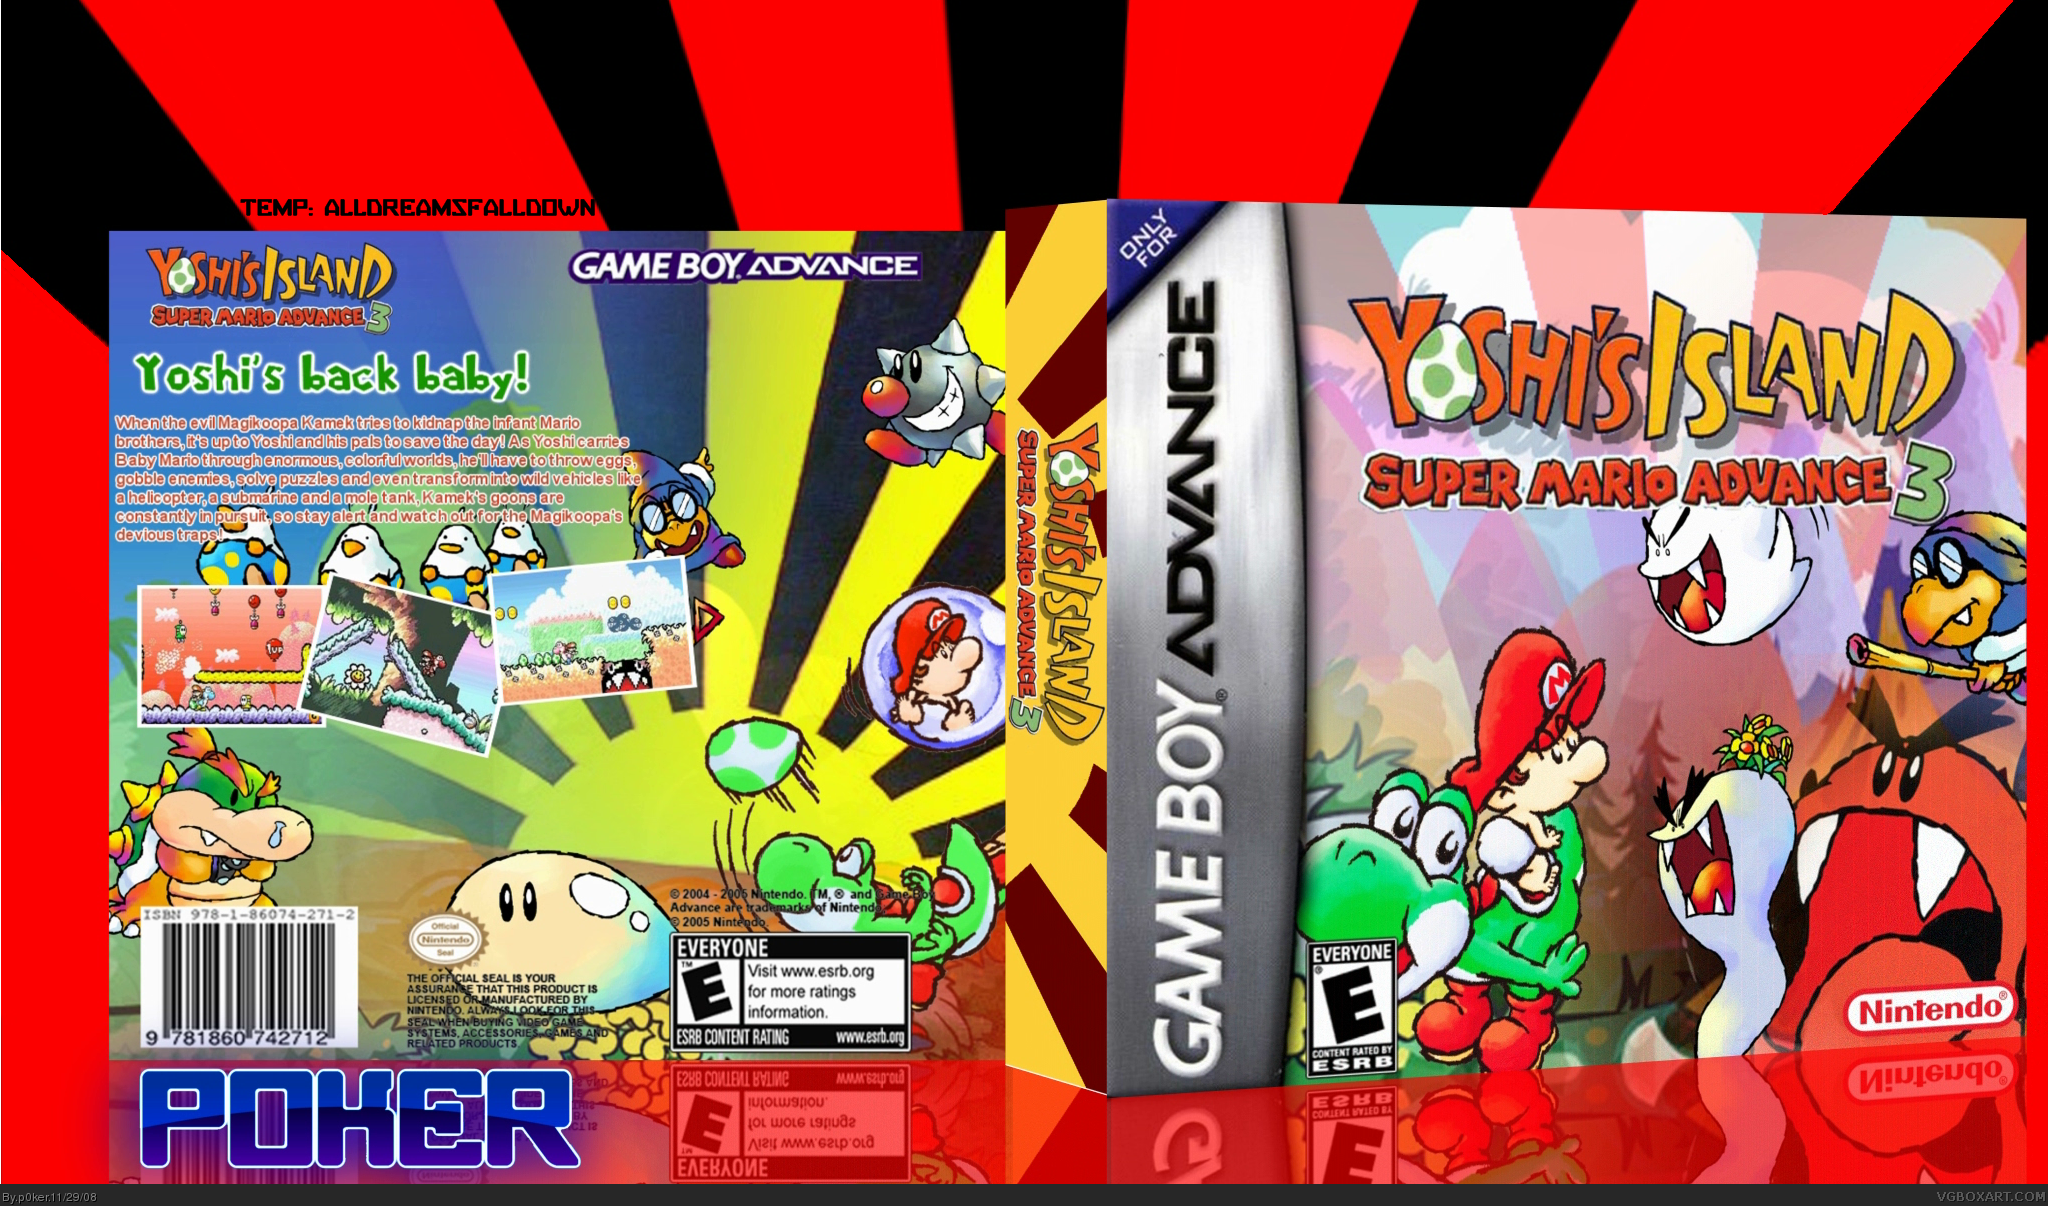 Yoshi's Island: Super Mario Advance 3 box cover